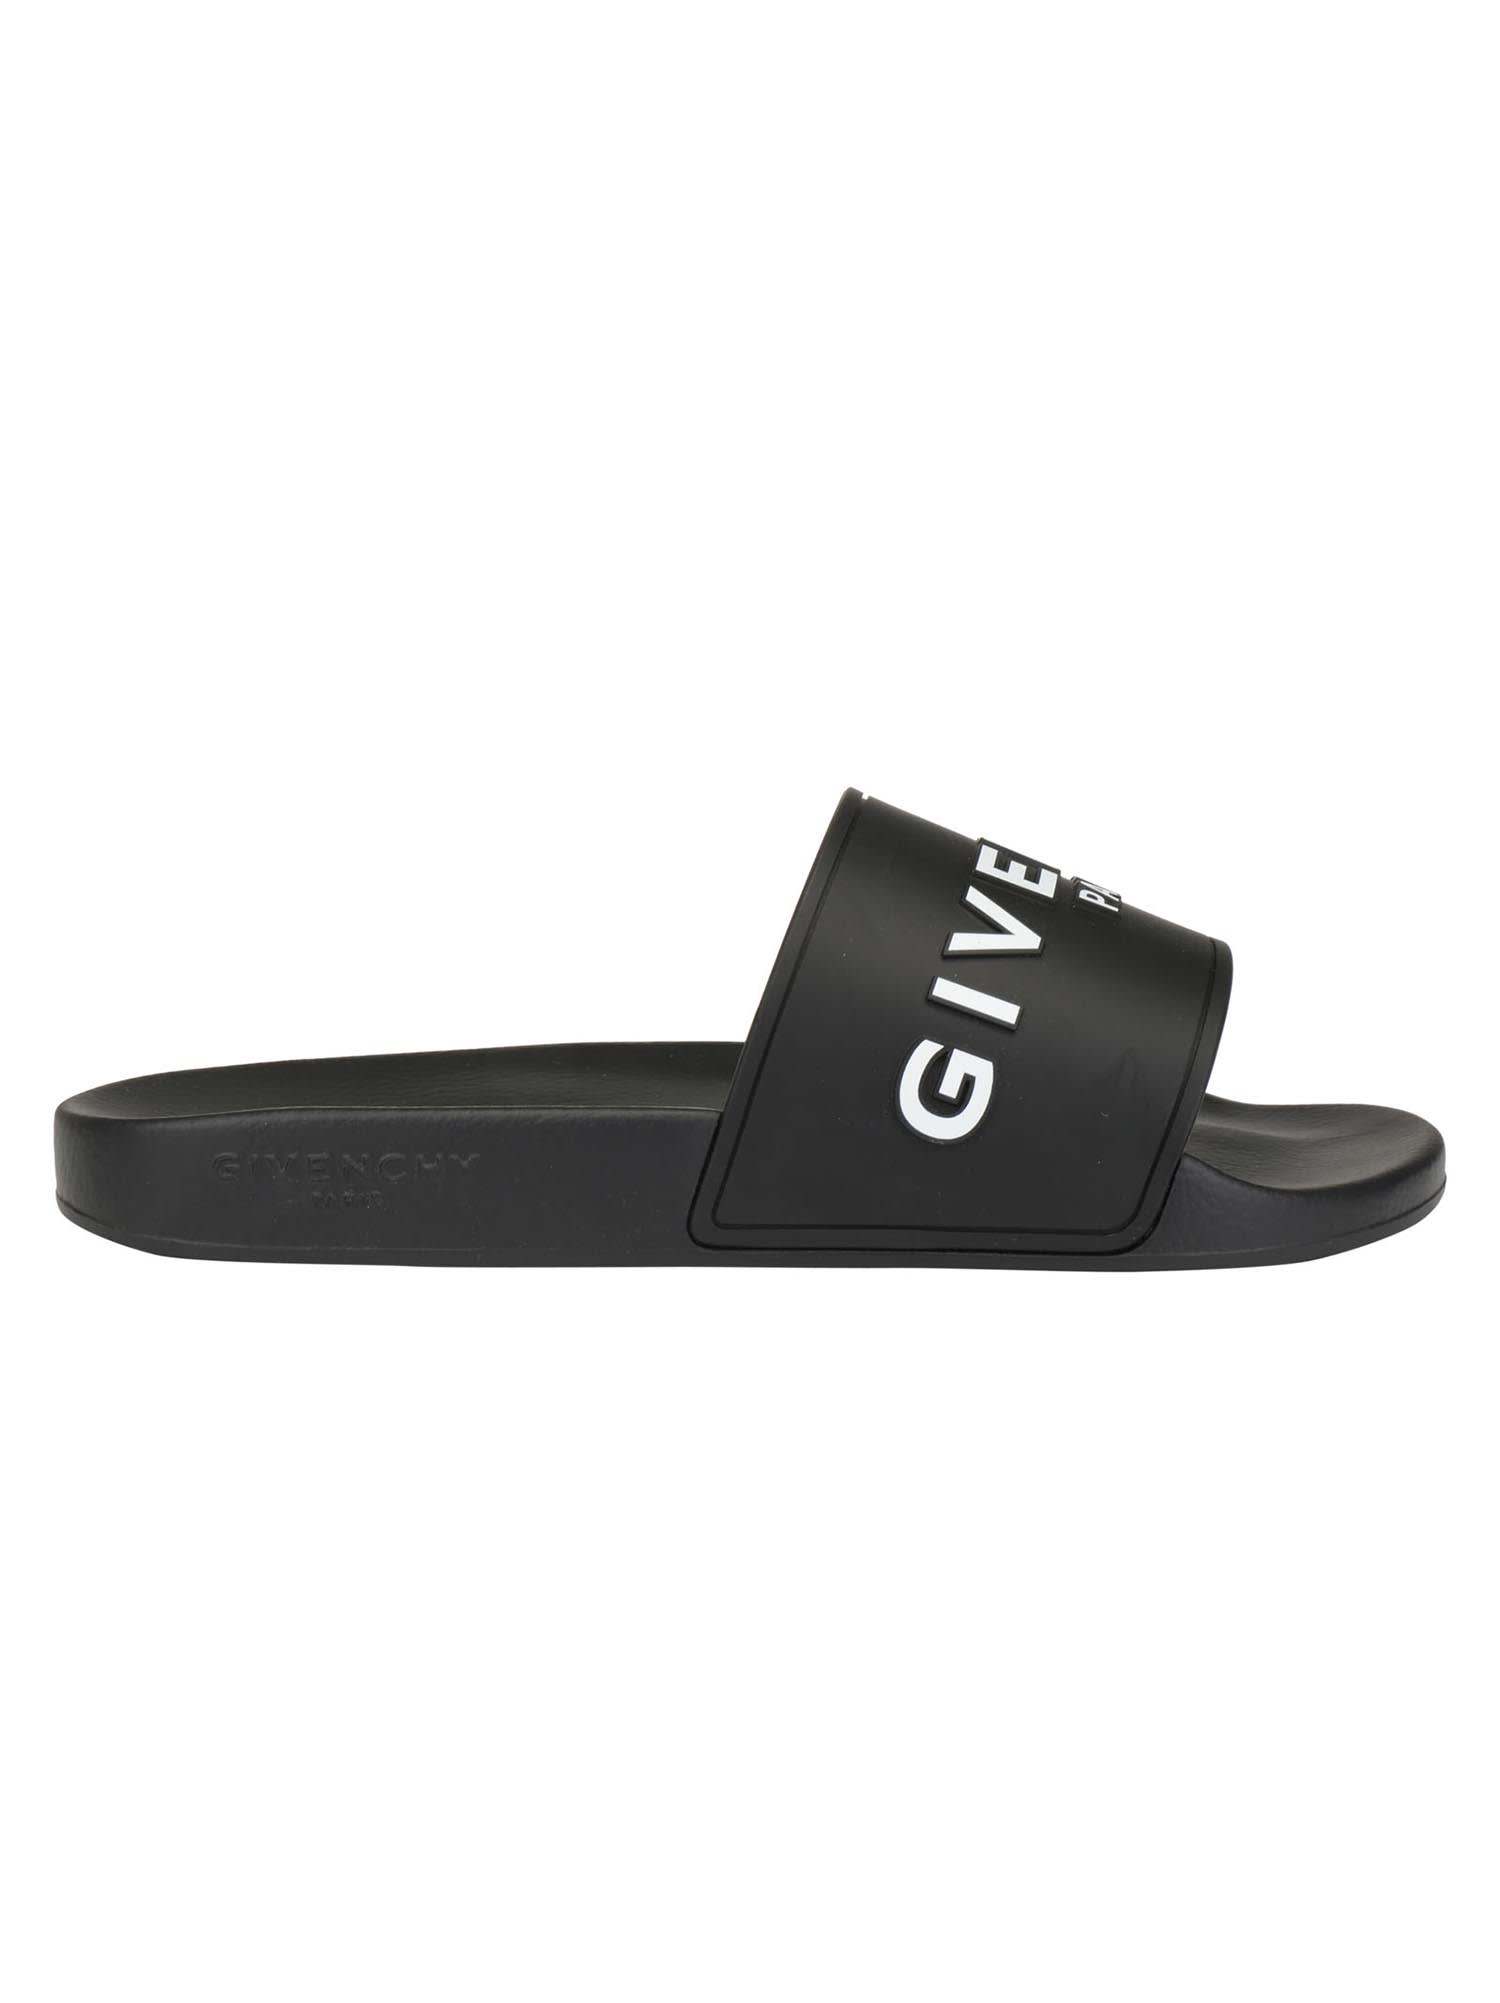 Givenchy Slide Flat Sandals